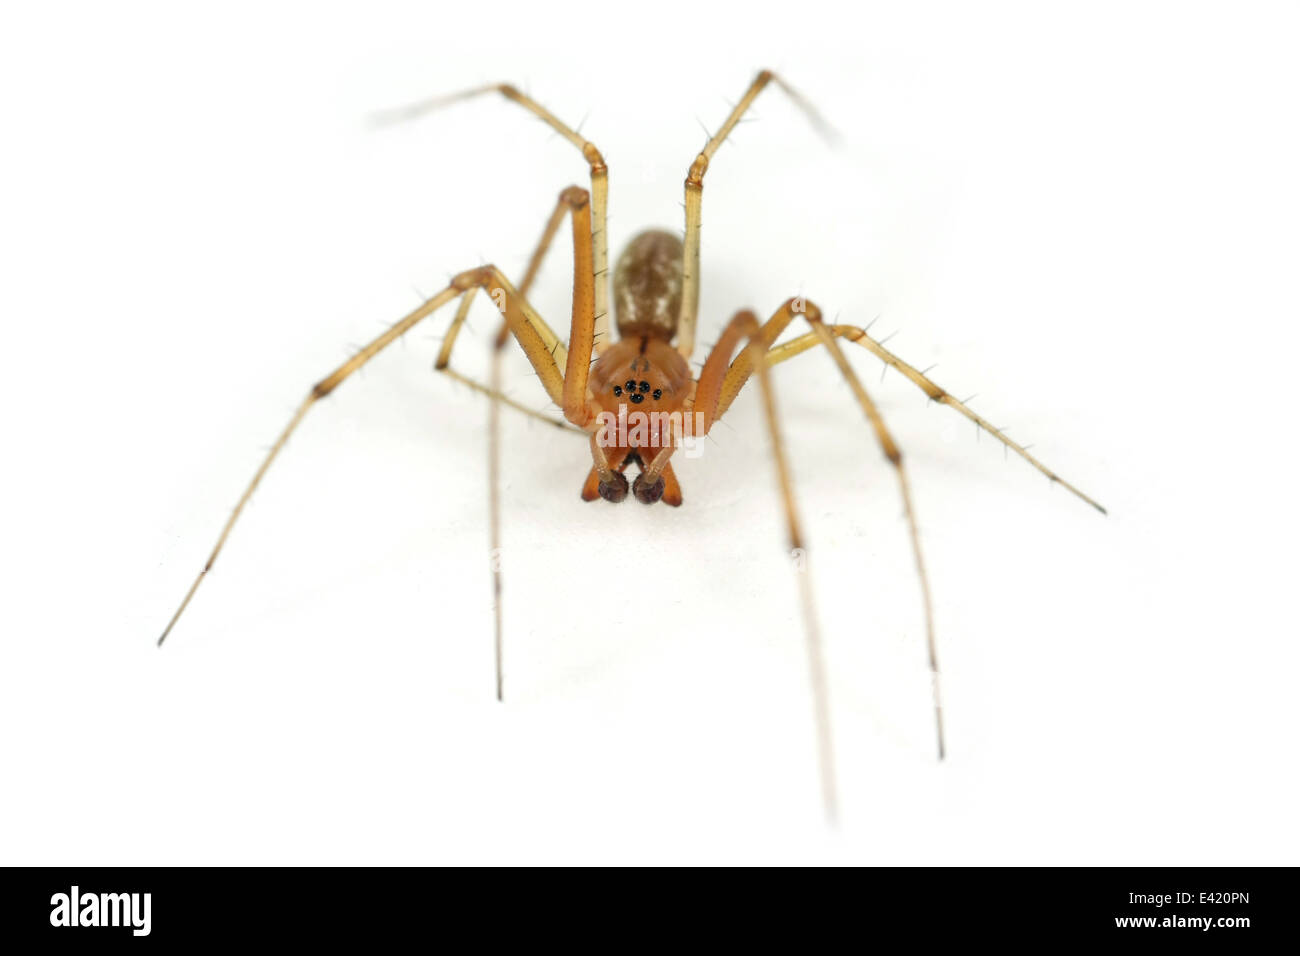 Maschio amaca comune-weaver (Linyphia triangularis) spider, parte della famiglia Linyphiidae - Sheetweb tessitori. Isolato su bianco. Foto Stock